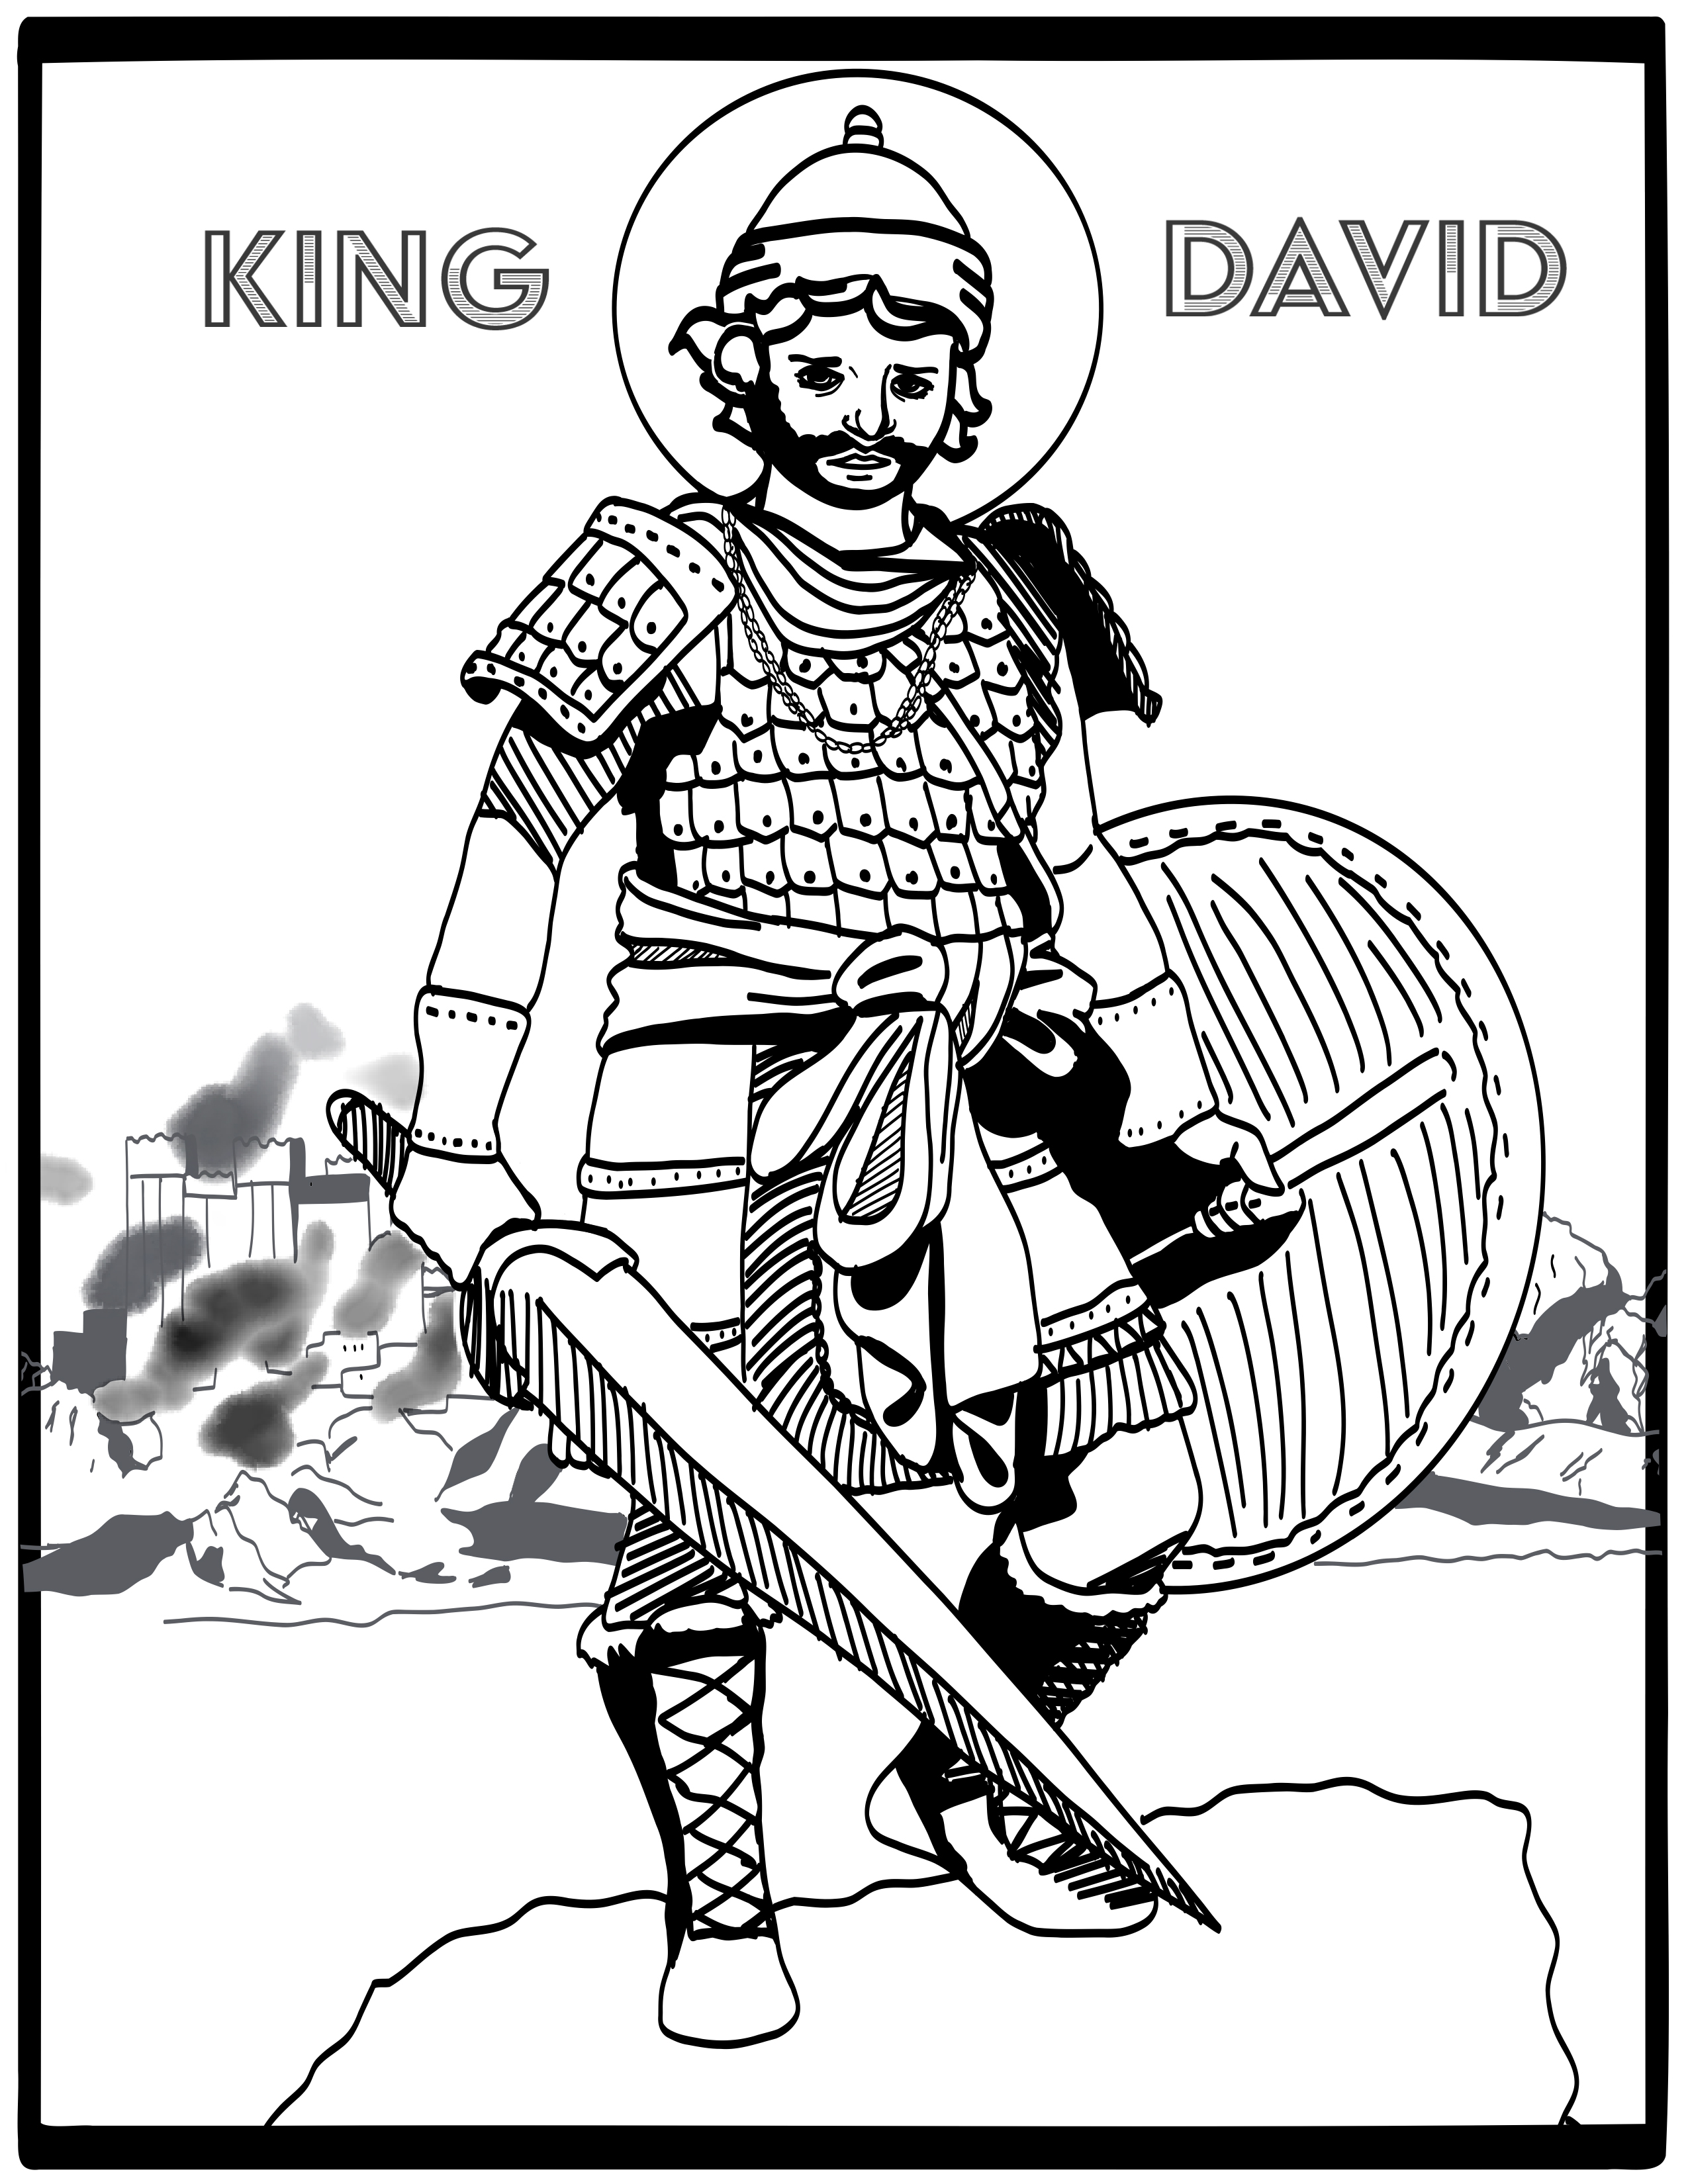 King david